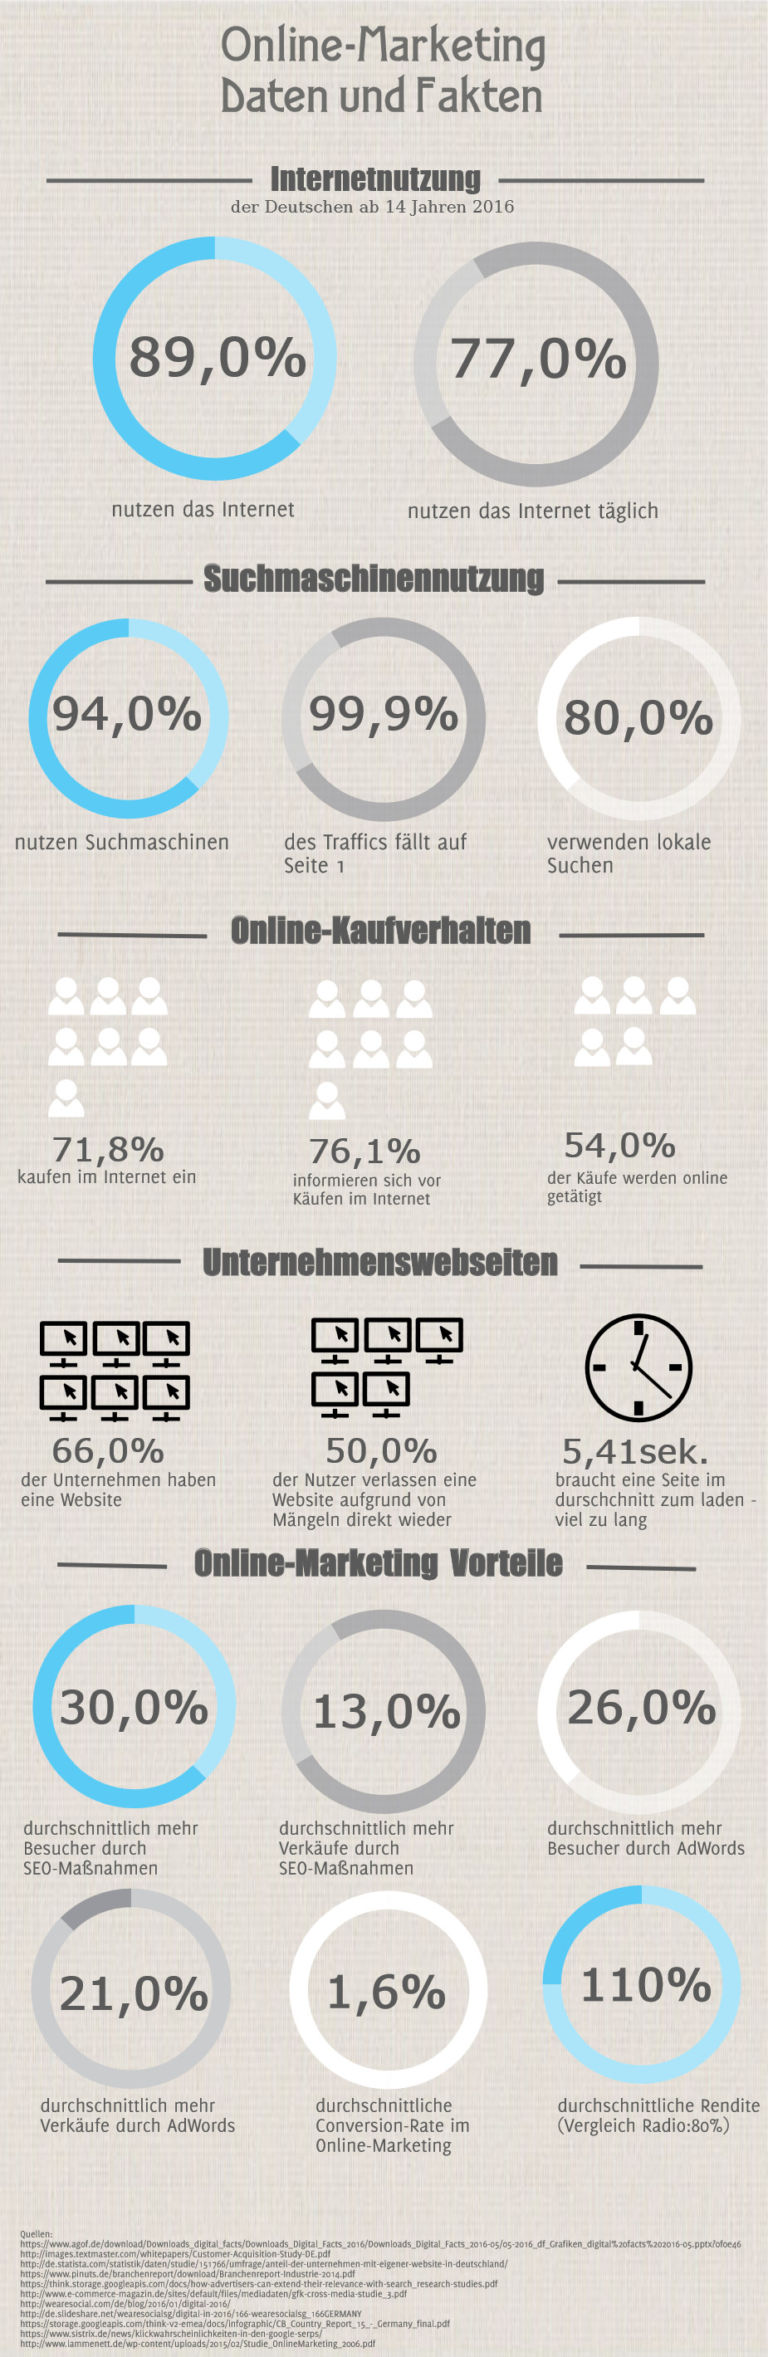 Infografik zu Online Marketing Agentur